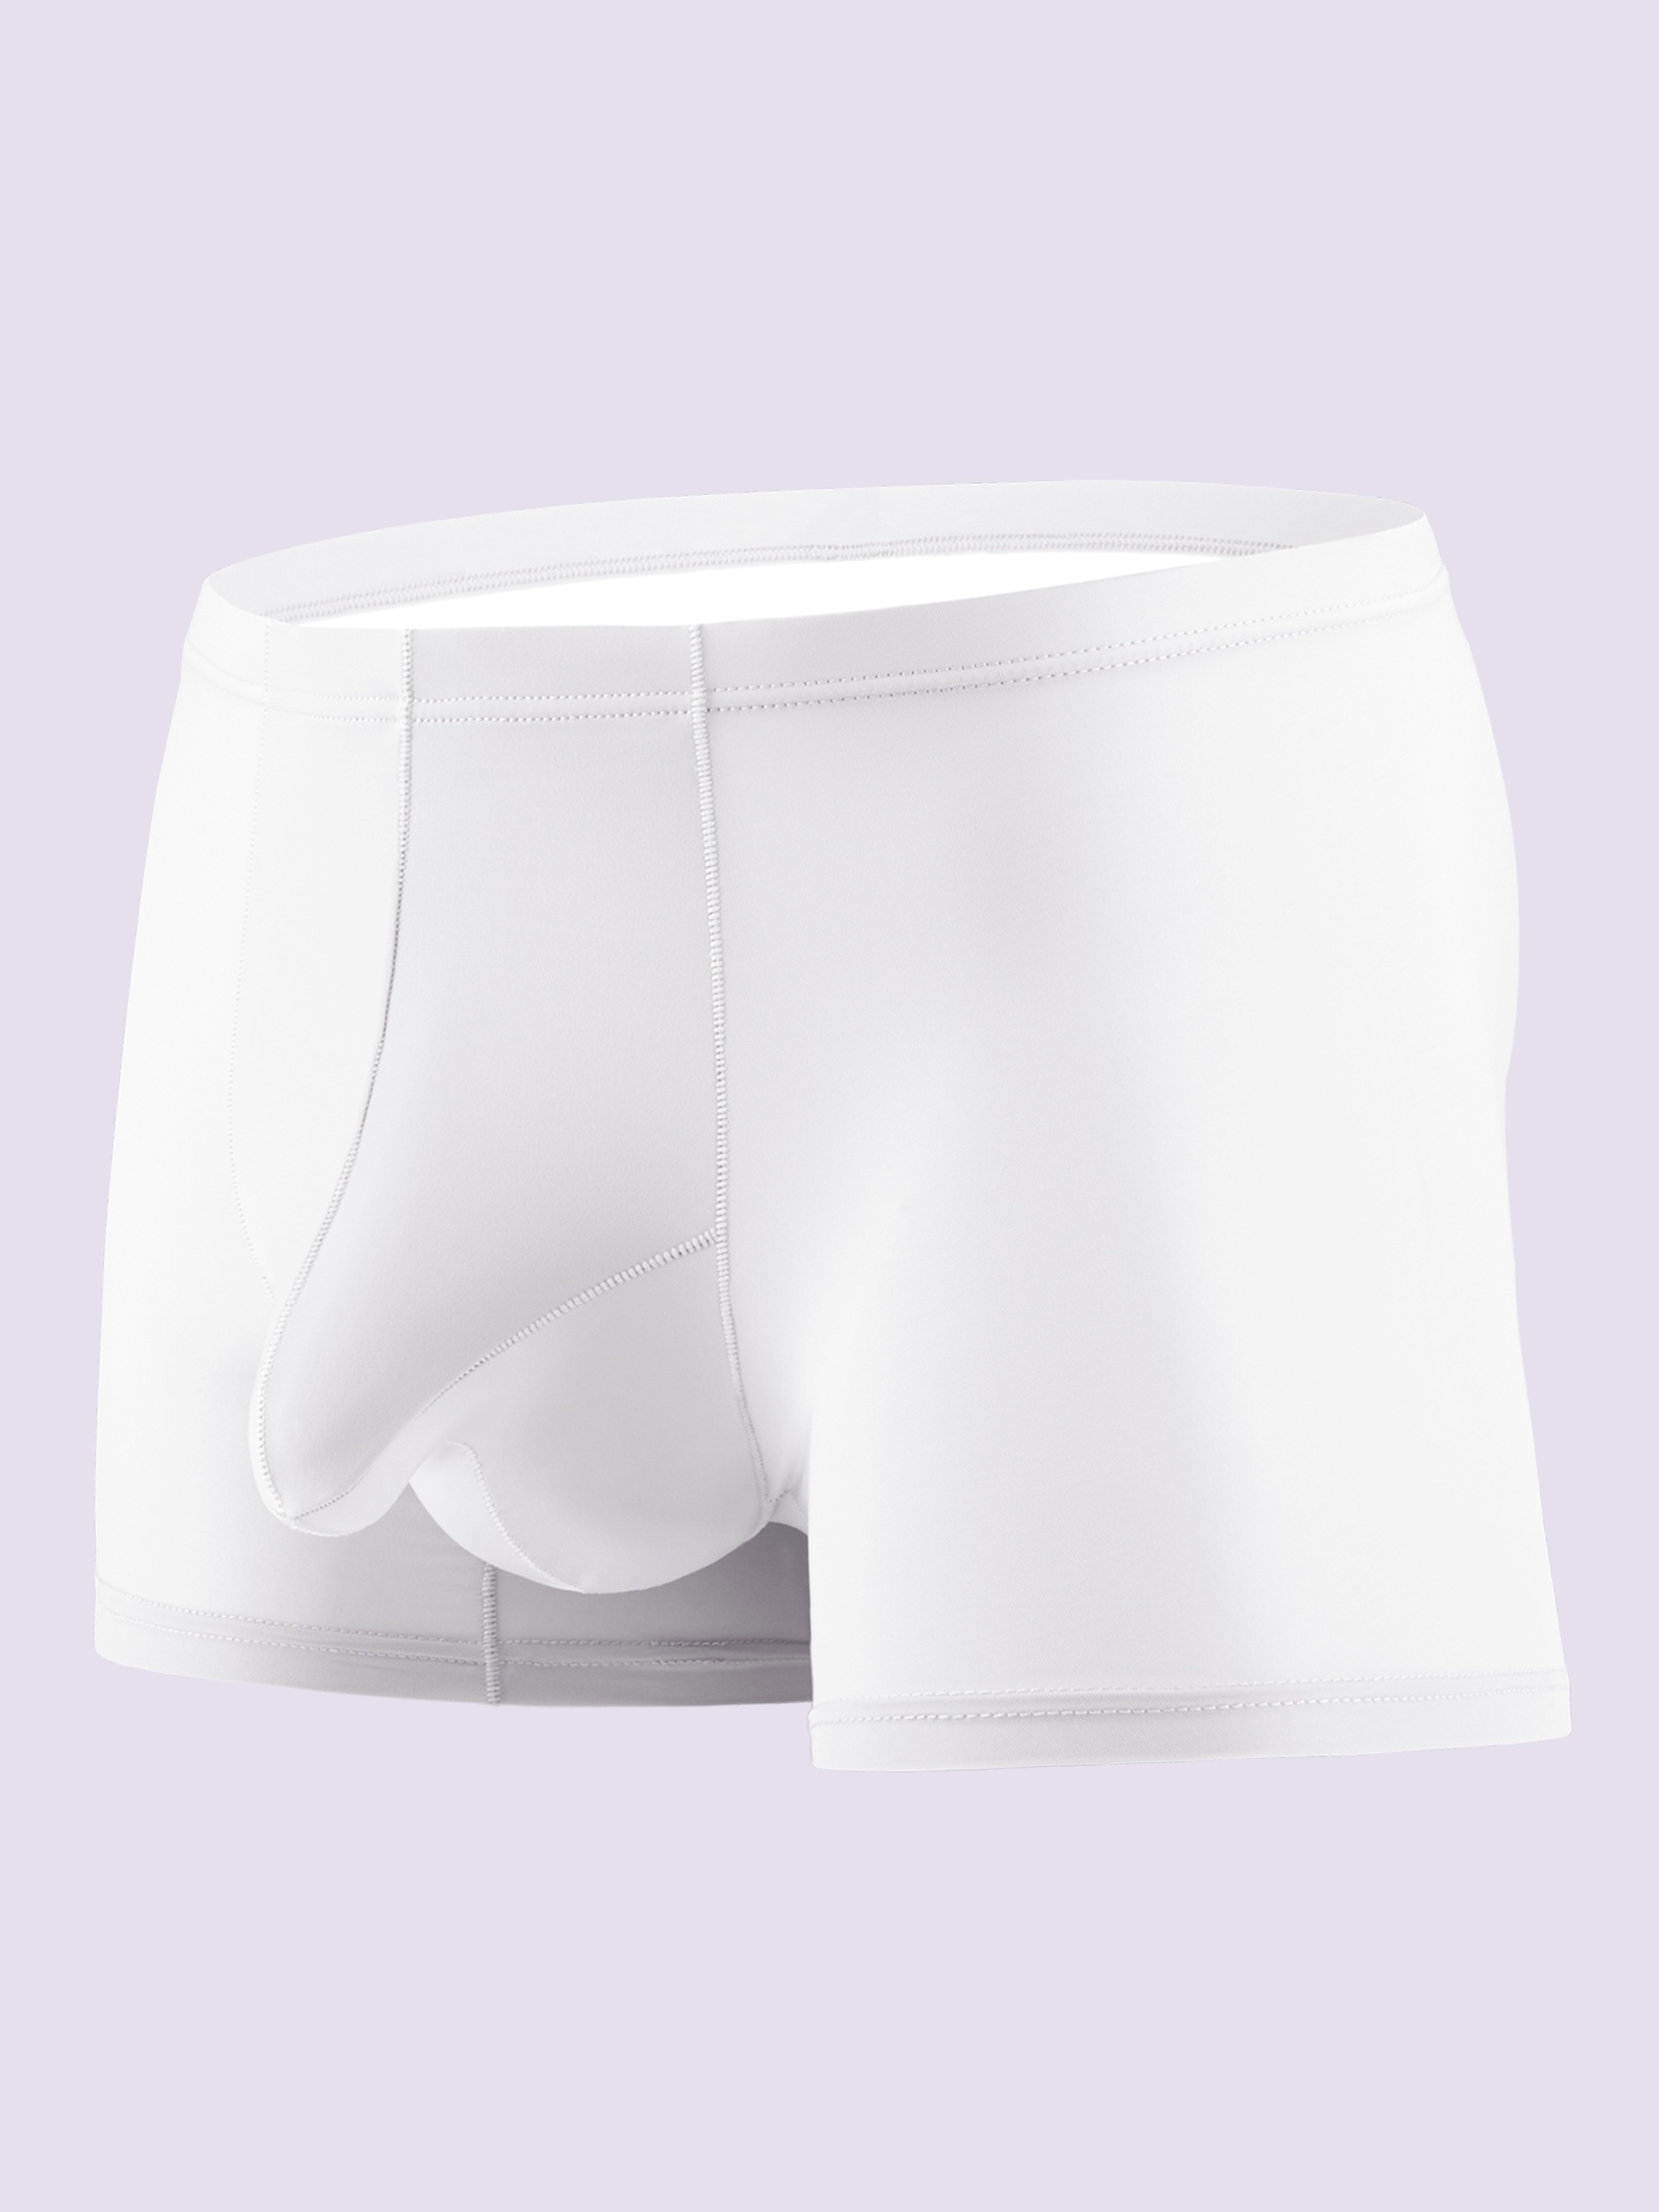 Open Fly Elephant Nose Men's Panties Cotton Mid Rise Underwear Boxer Briefs